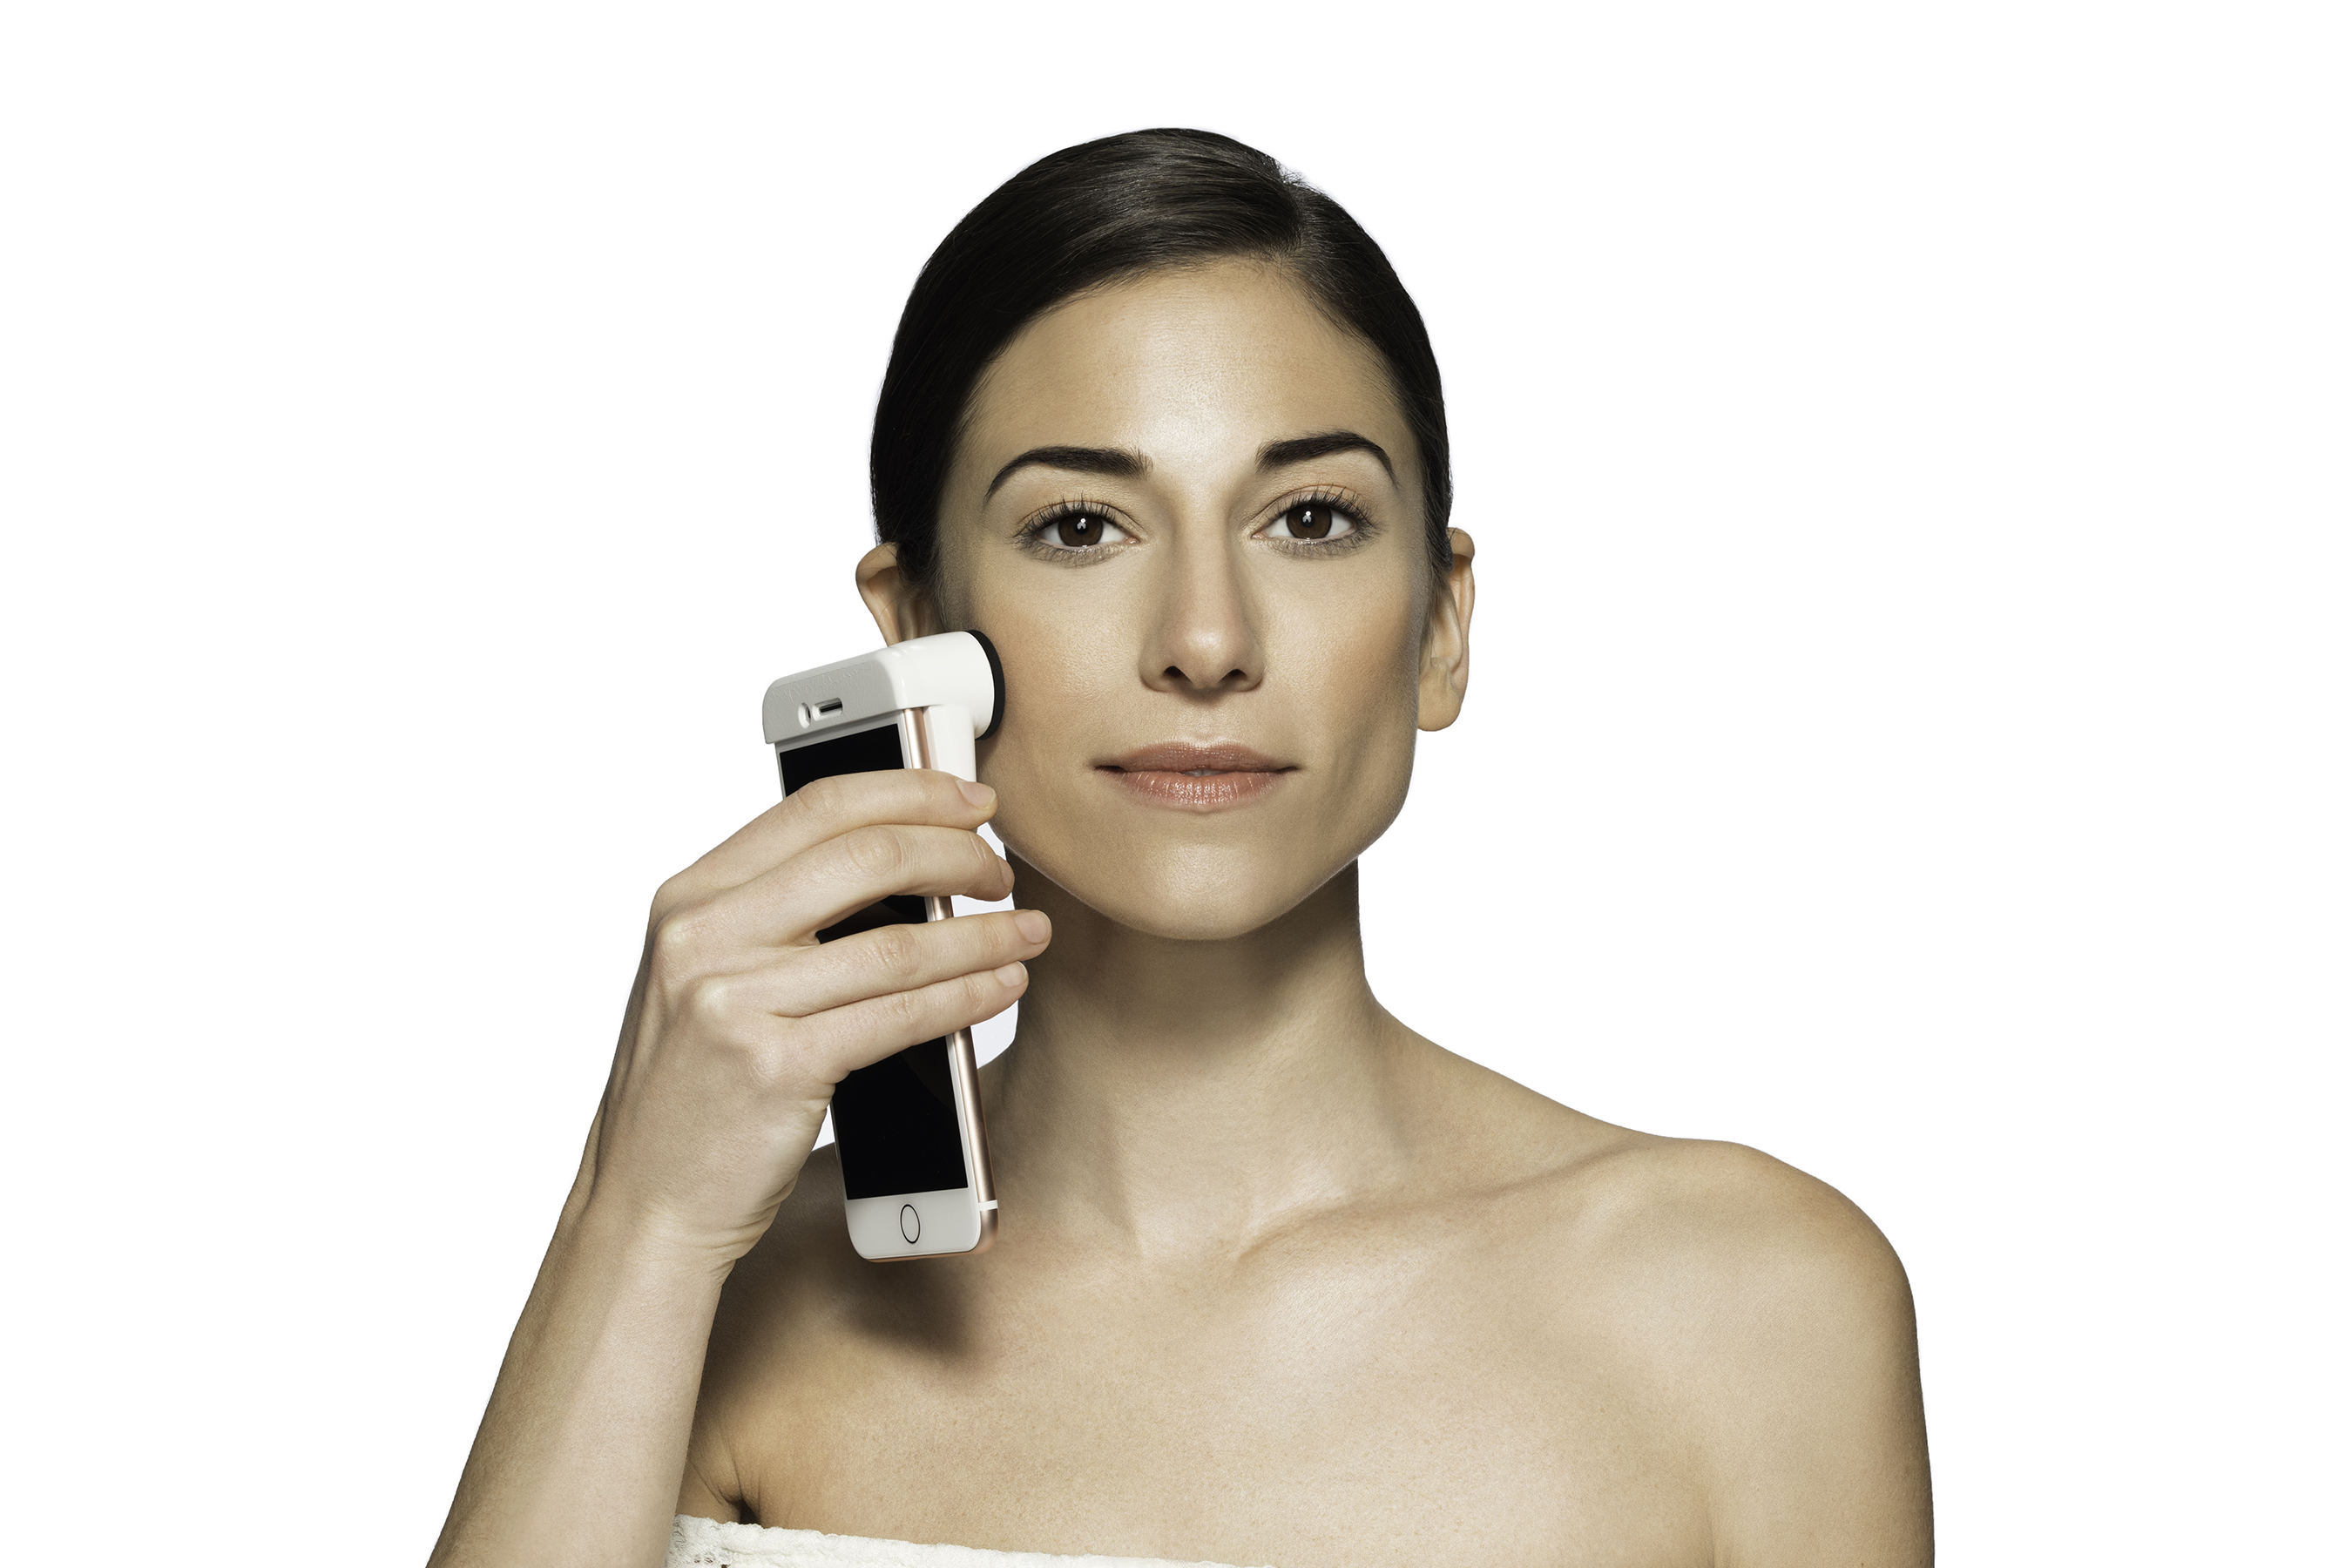 Neutrogena Skin360 SkinScanner In-Use